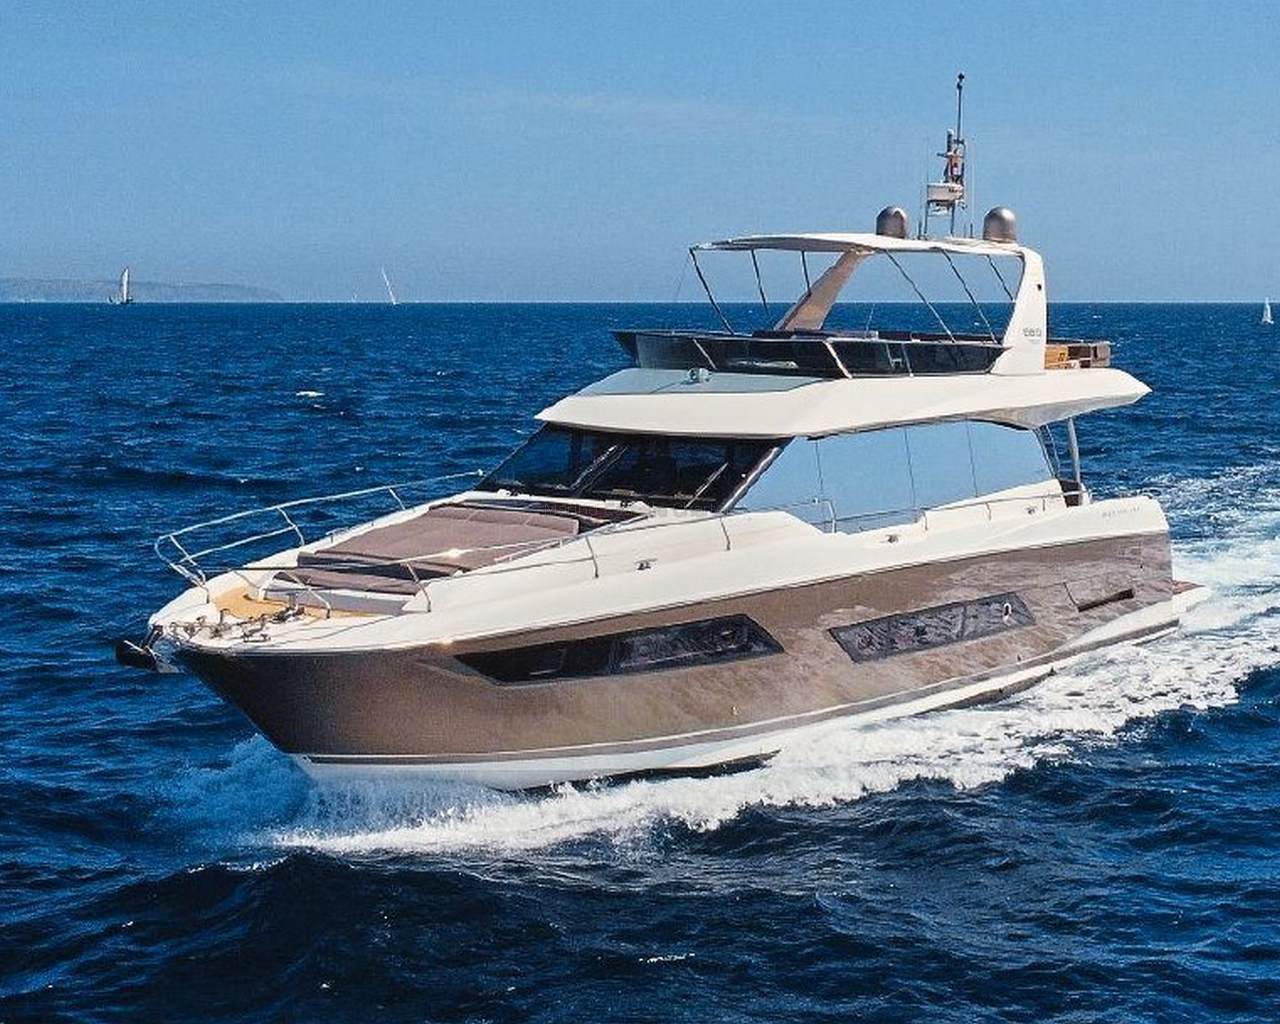 Barco de motor EN CHARTER, de la marca Prestige modelo 680 y del año 2016, disponible en Marina Port de Mallorca Palma Mallorca España